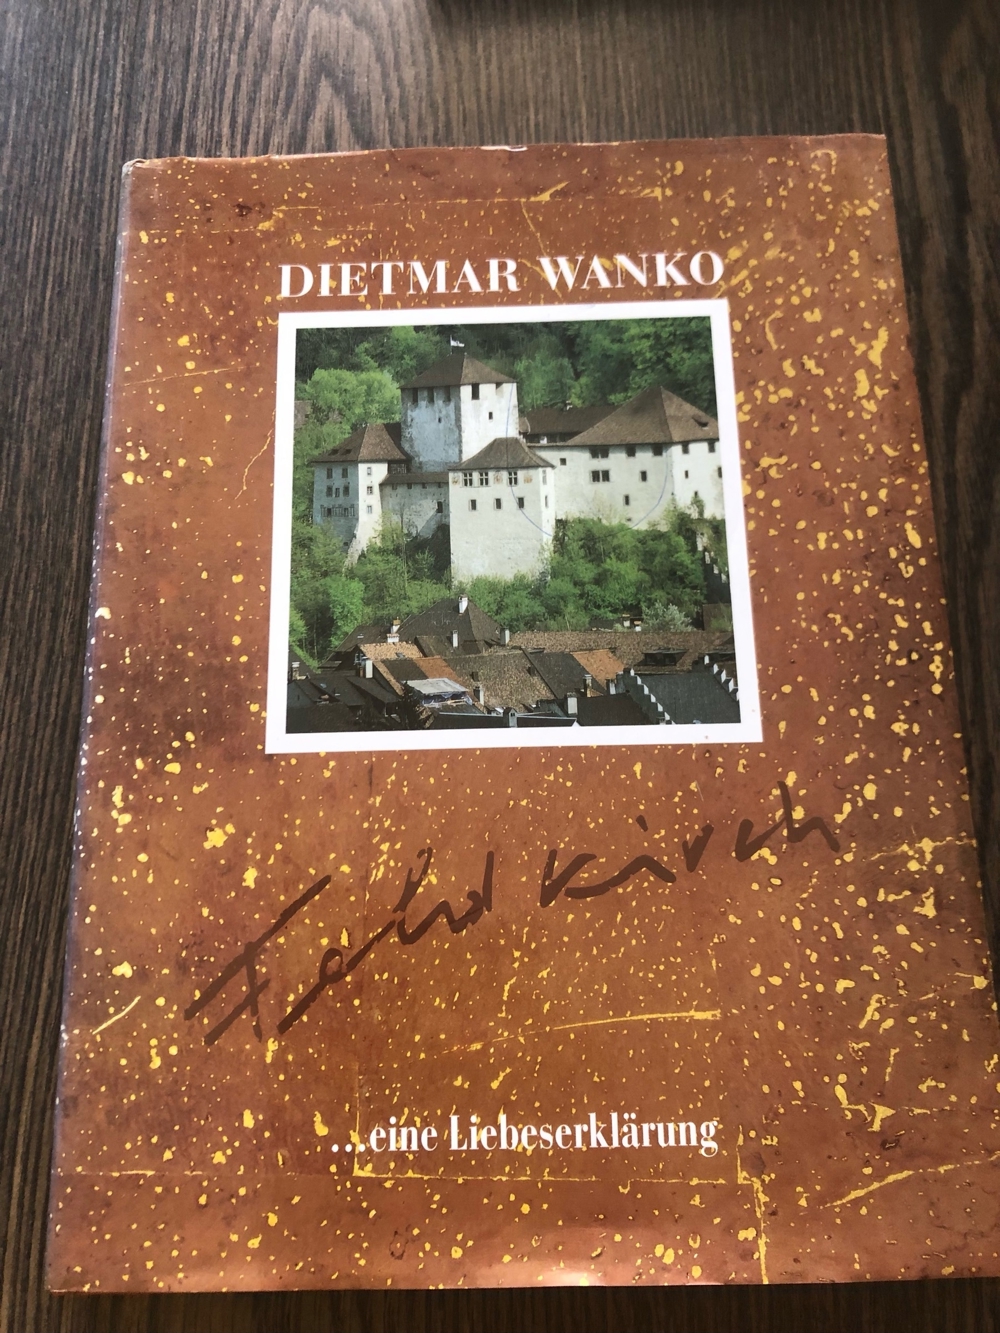 Feldkirch eine Liebeserklärung, Dietmar Wanko